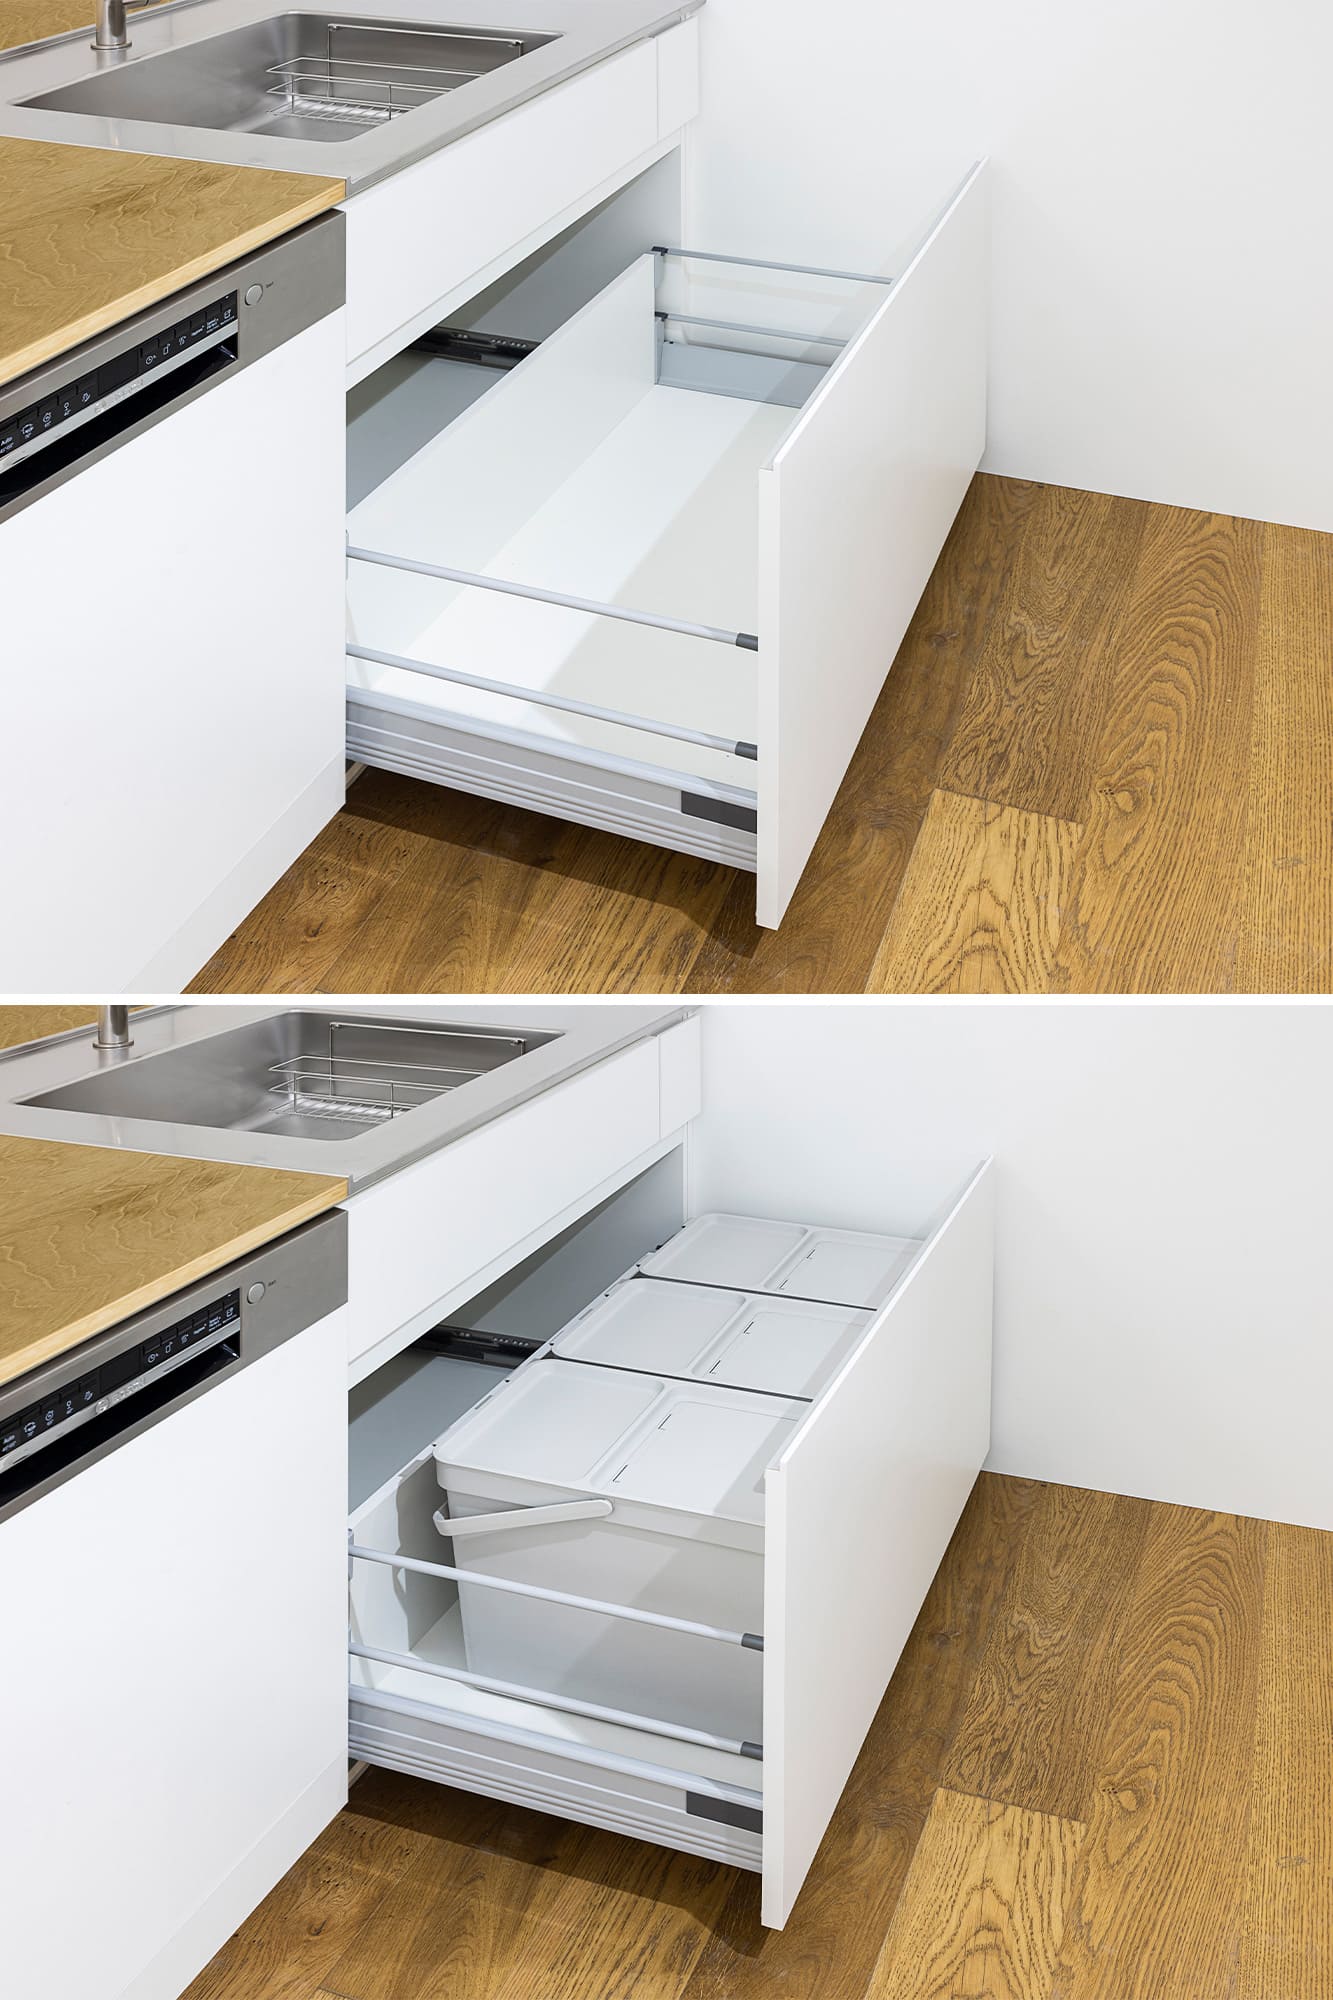 木天板キッチンⅡ型 対面シンク側 フロントオープン食洗機 W450タイプ KB-KC029-03-G183 シンク下収納（ゴミ箱はIKEAのもの）